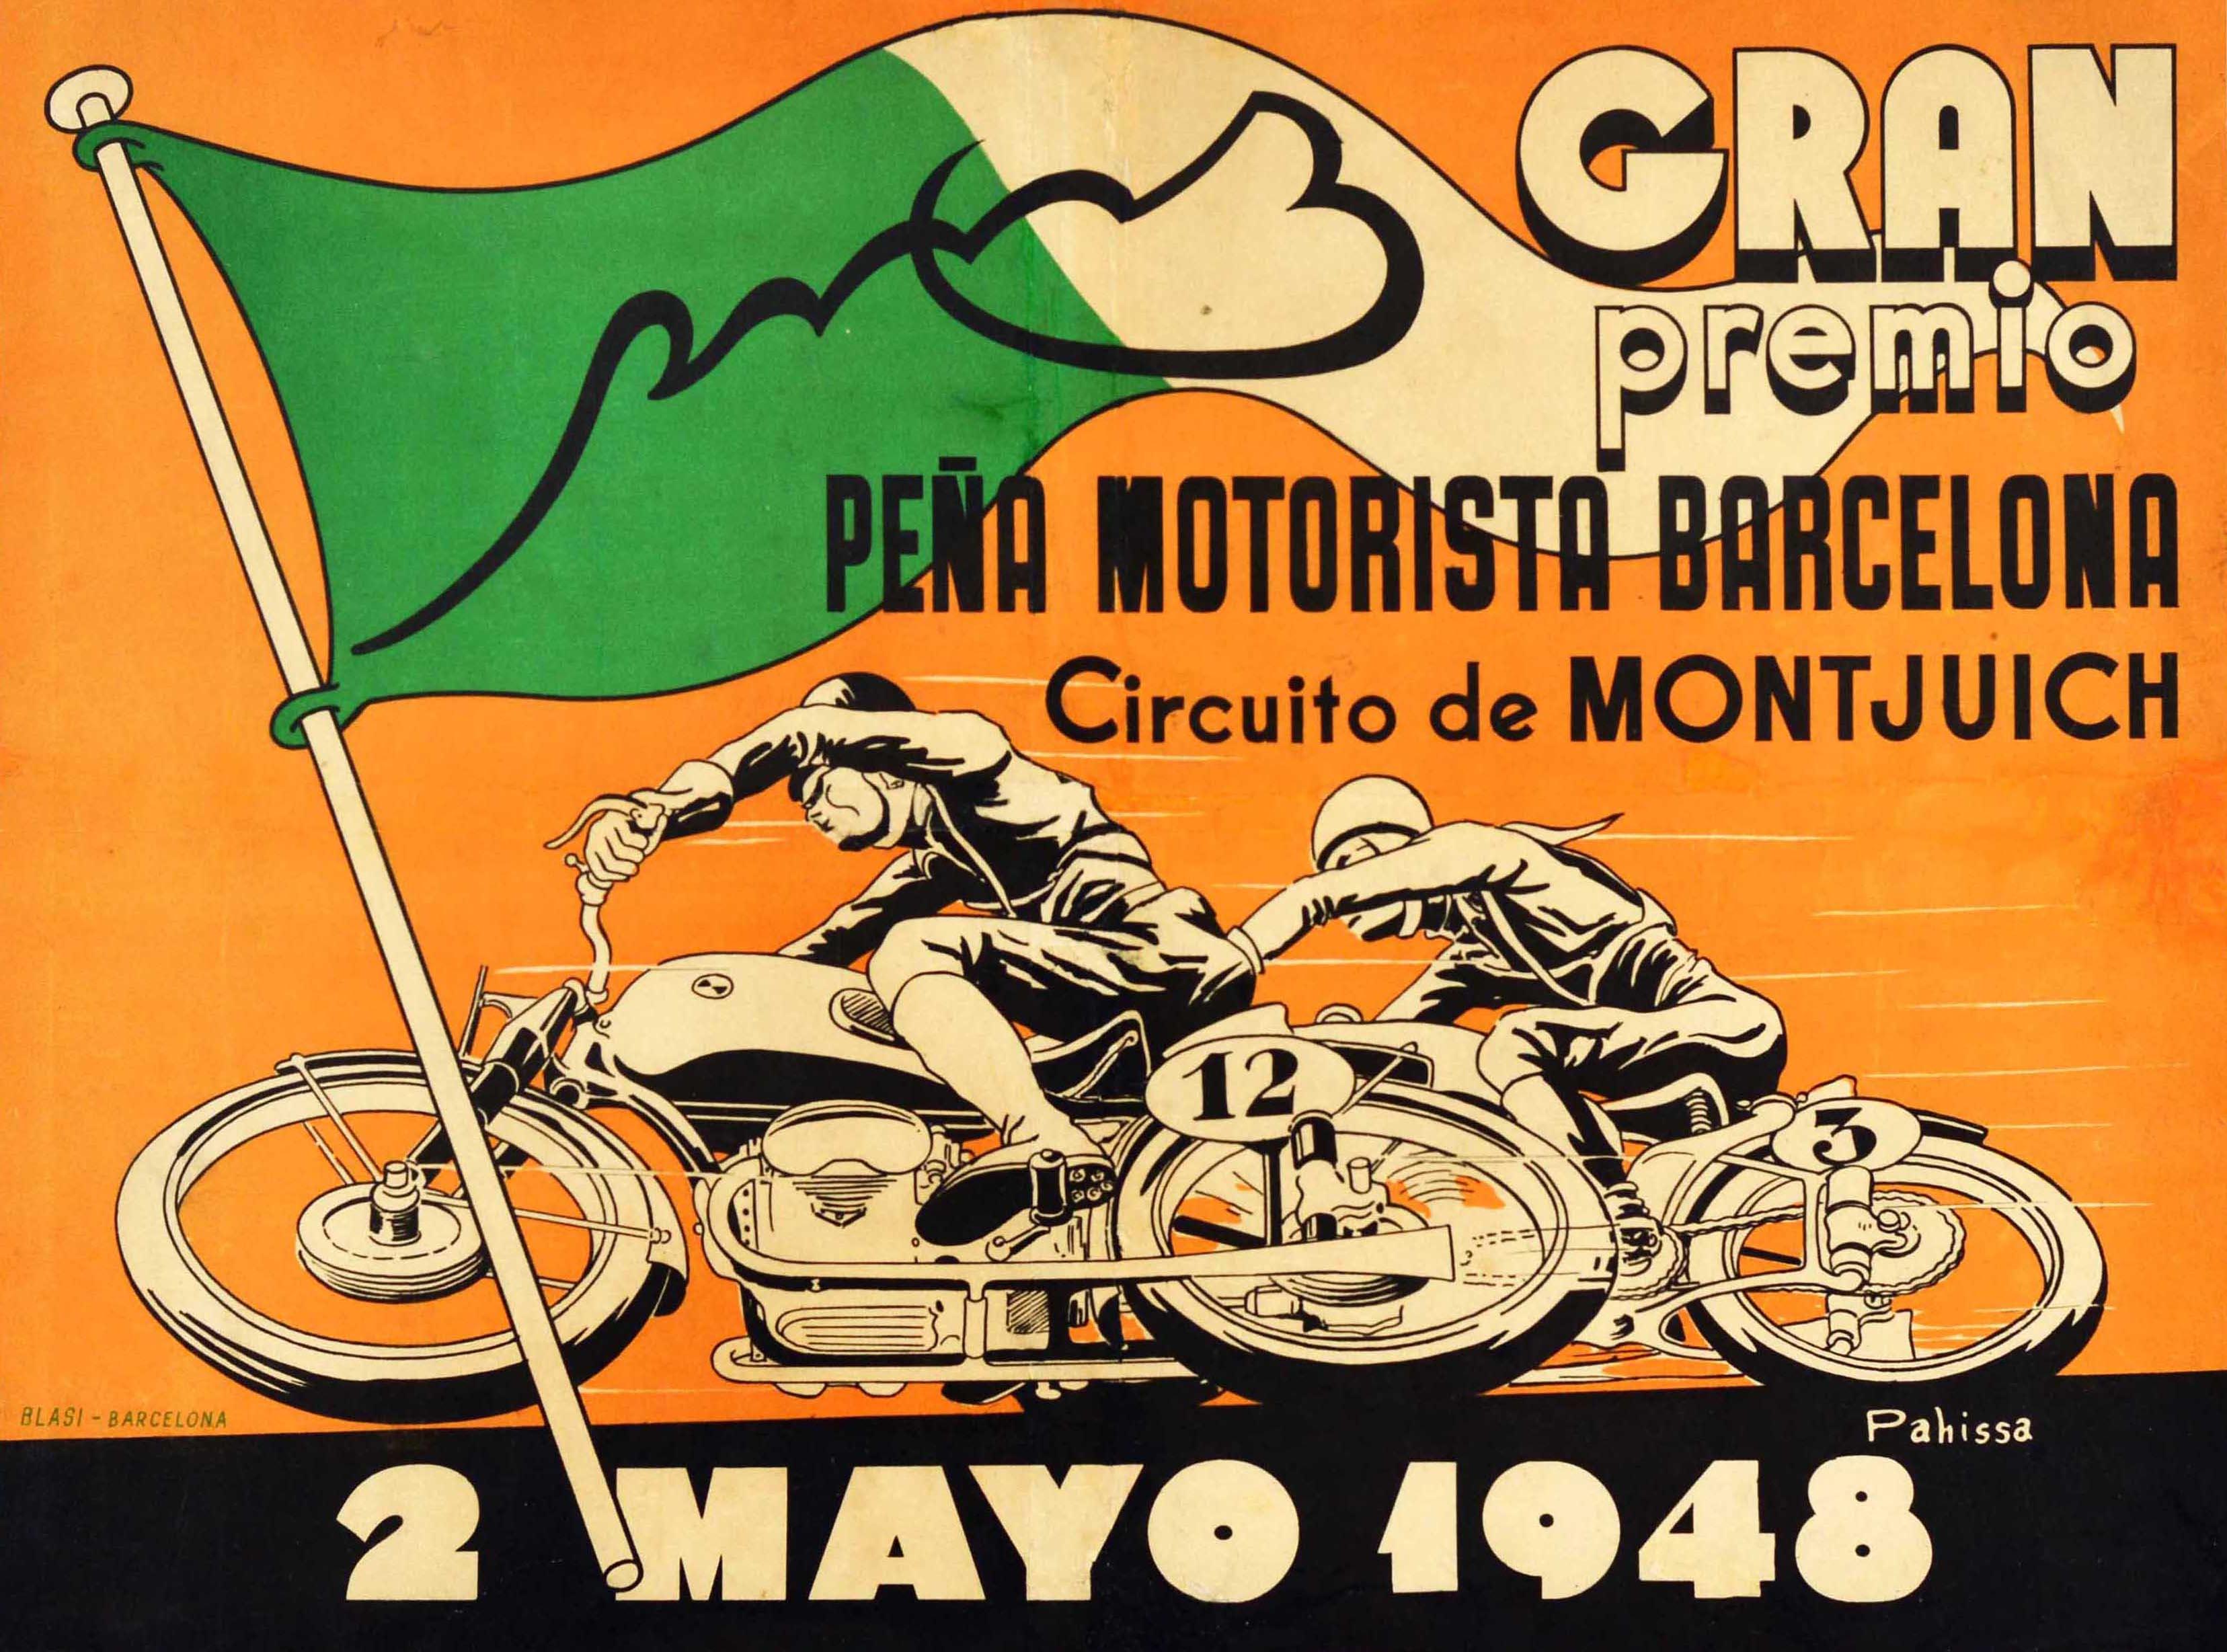 Affiche originale de sport automobile pour le Gran Premio Pena Motorista Barcelona Circuito de Montjuich / Grand Prix Pena Motorista Barcelona Montjuic Circuit le 2 mai 1948, représentant un dessin dynamique de deux motocyclistes sur des motos